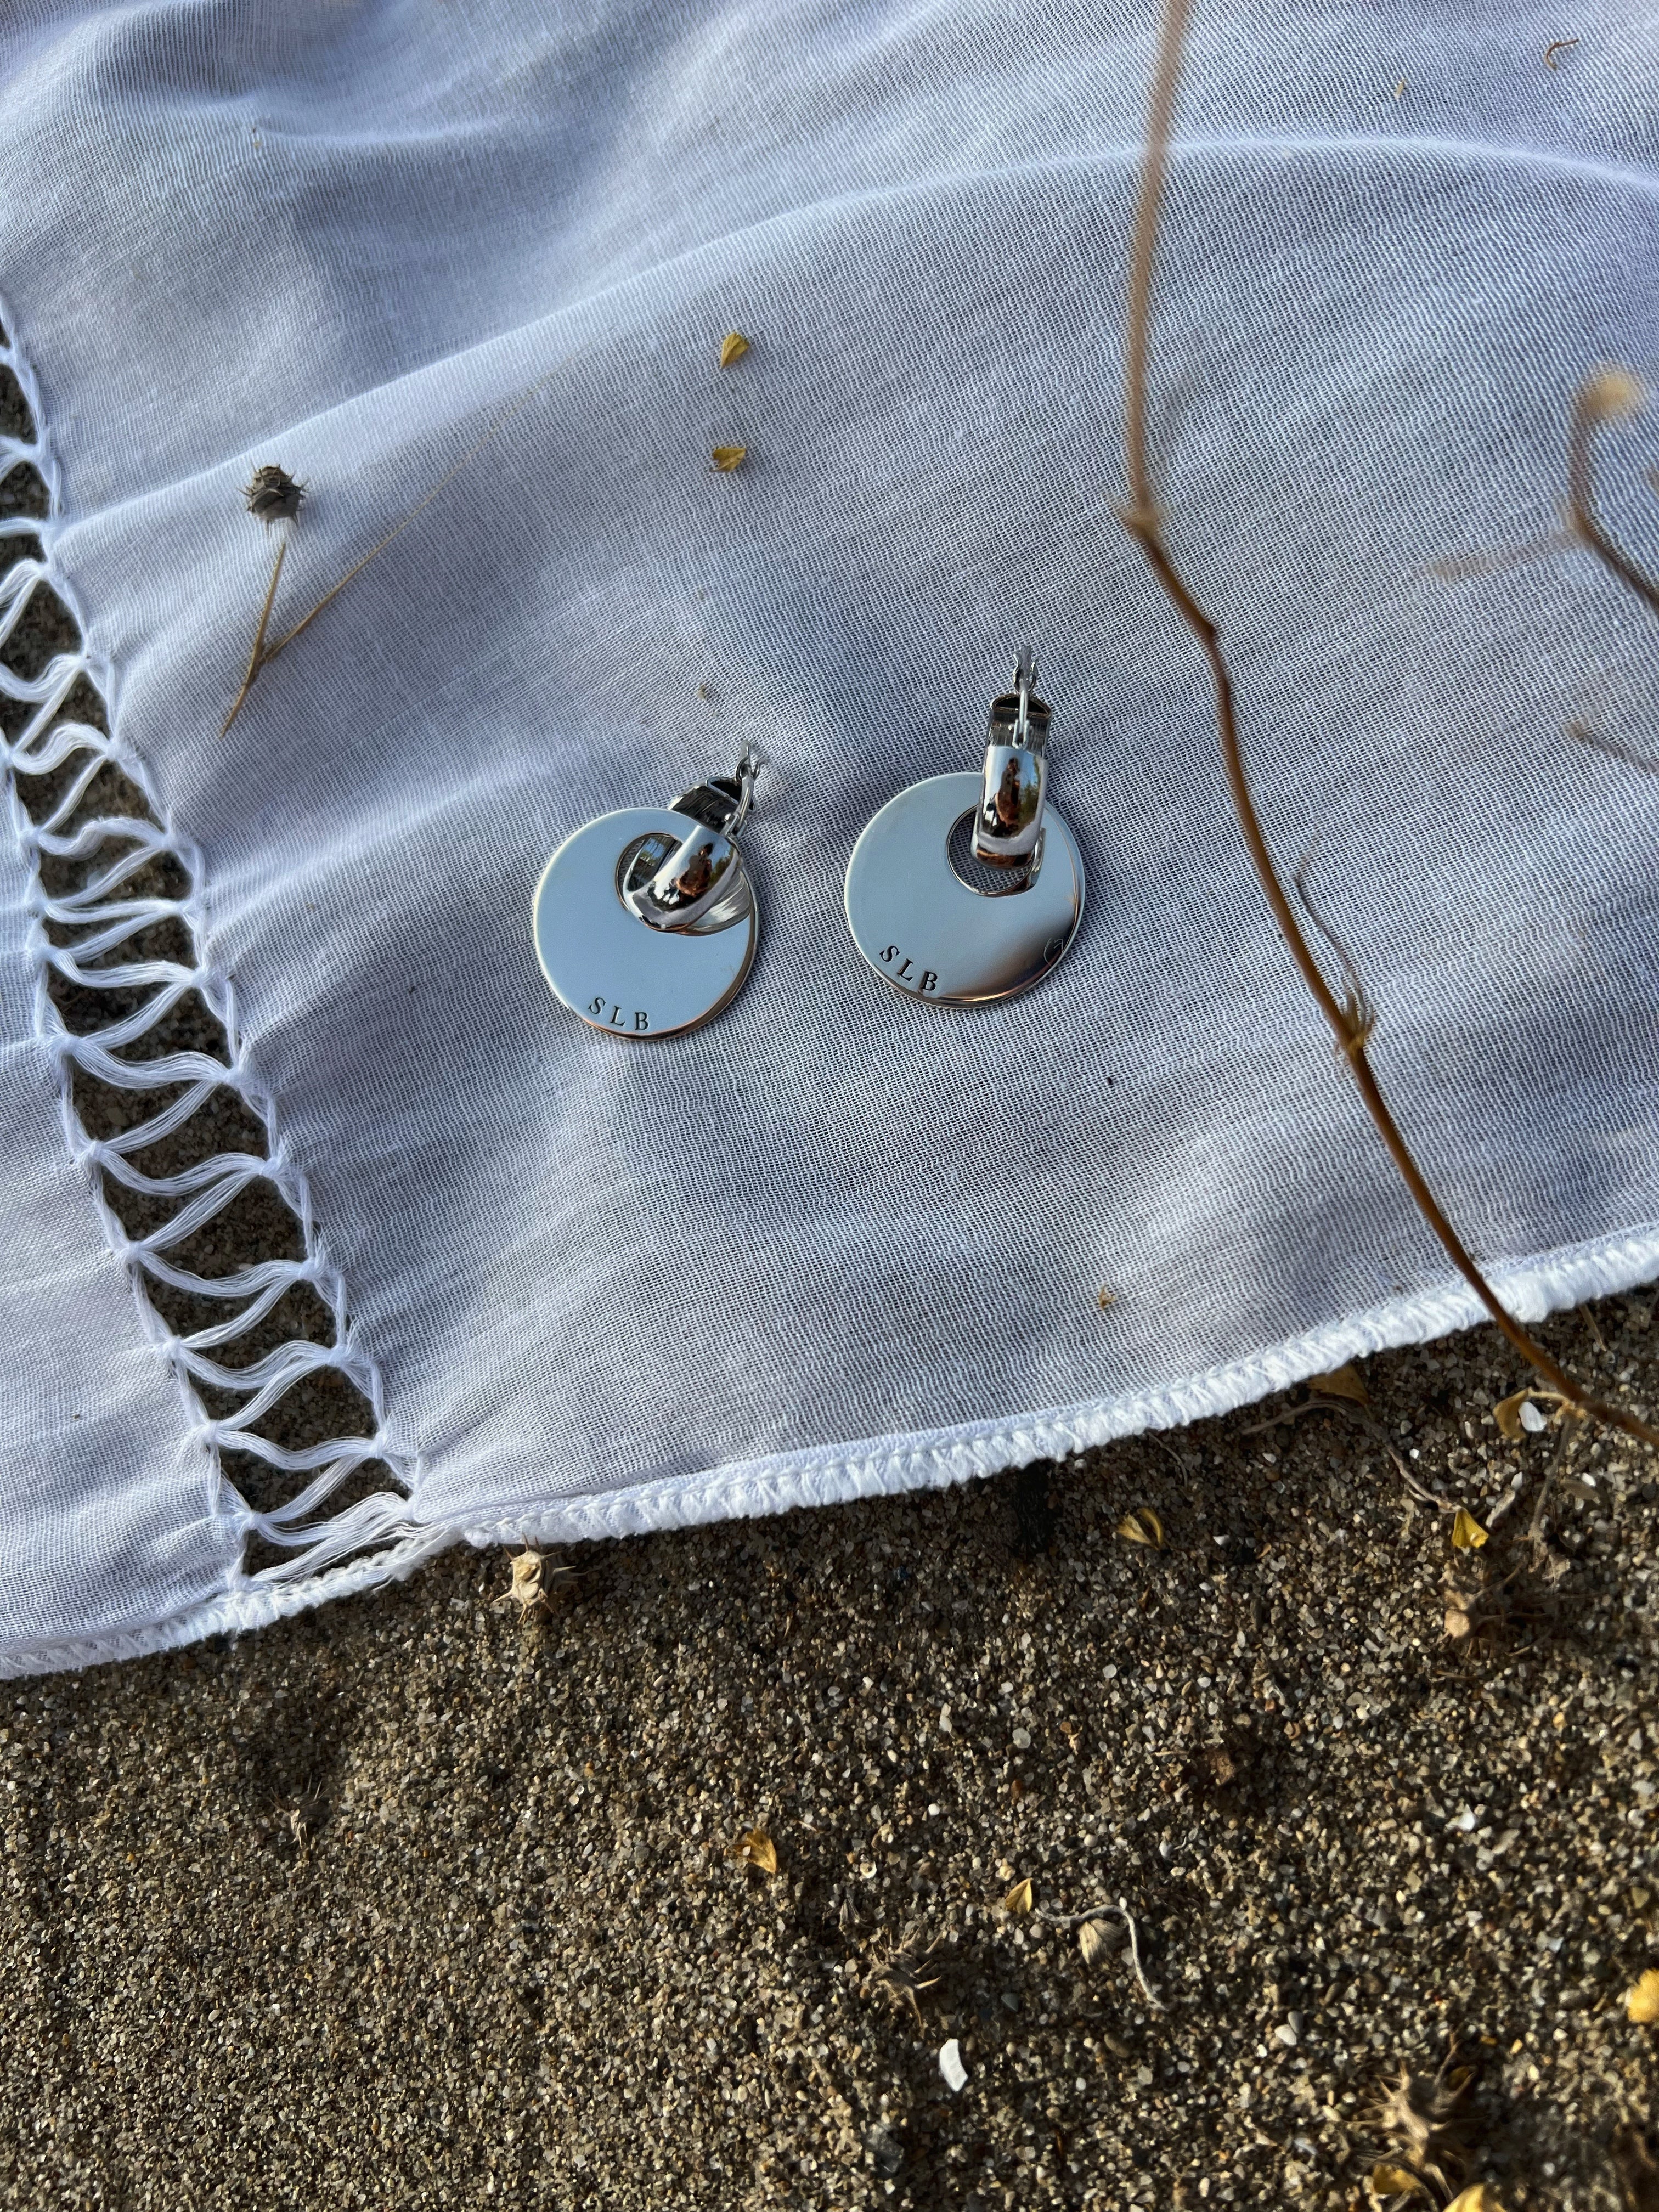 Sillabe Studio Monete earrings - Silver